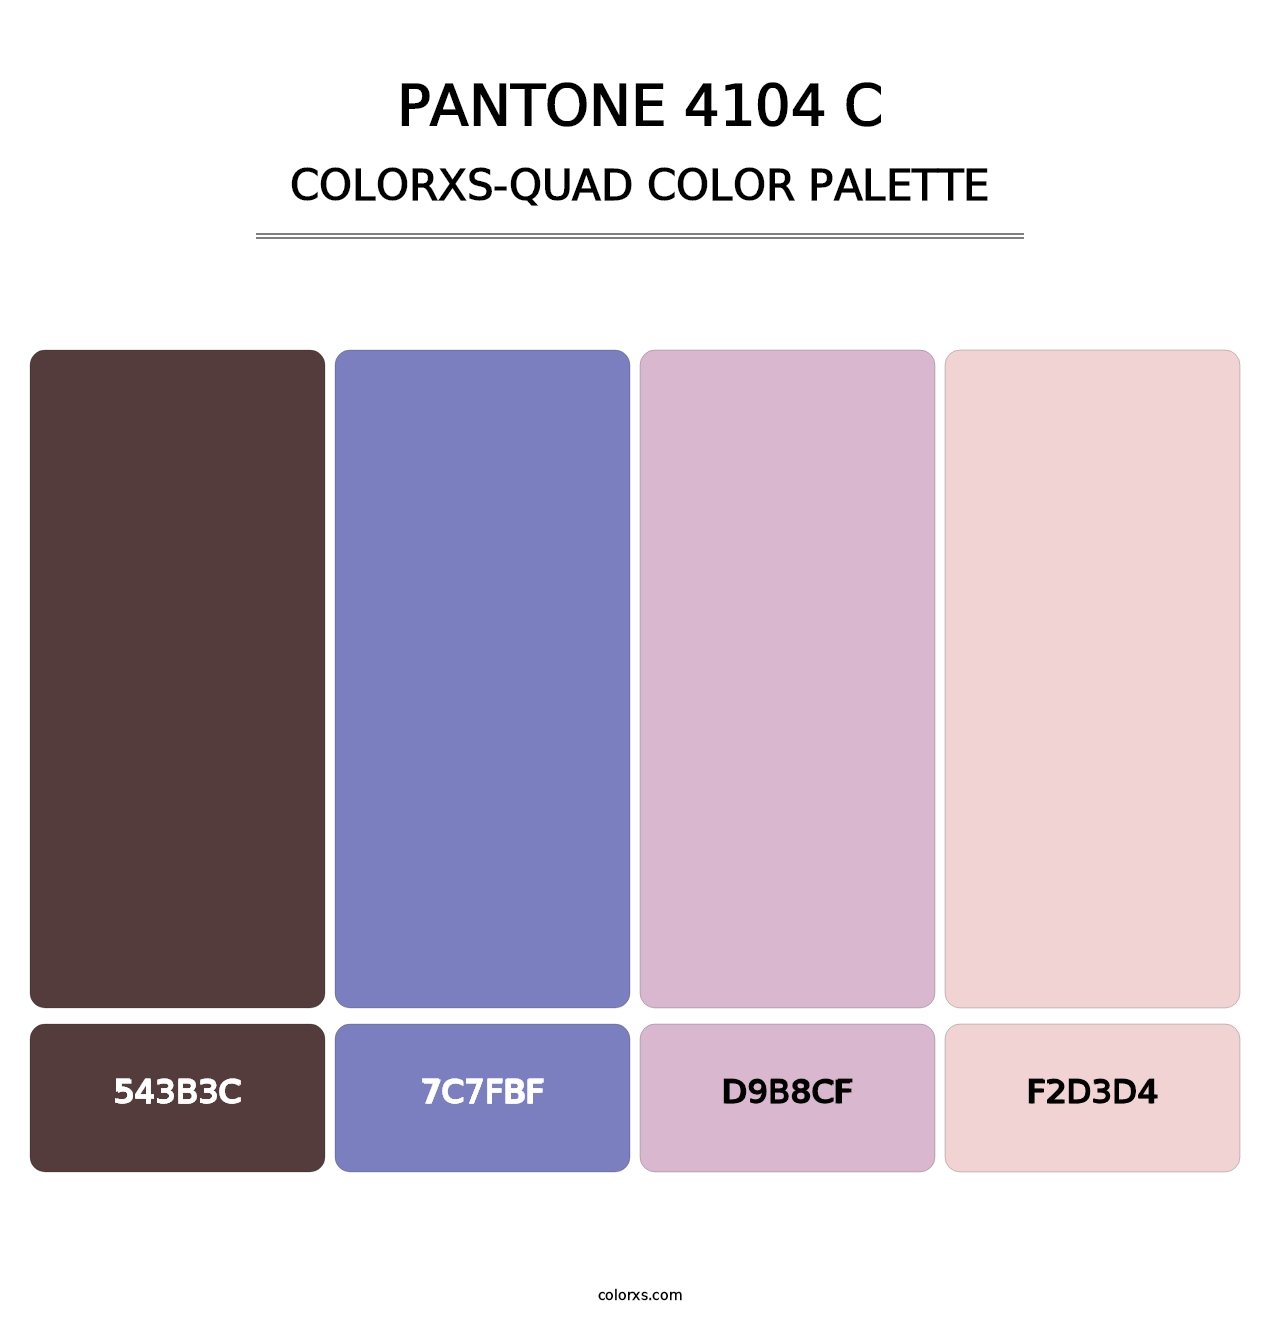 PANTONE 4104 C - Colorxs Quad Palette